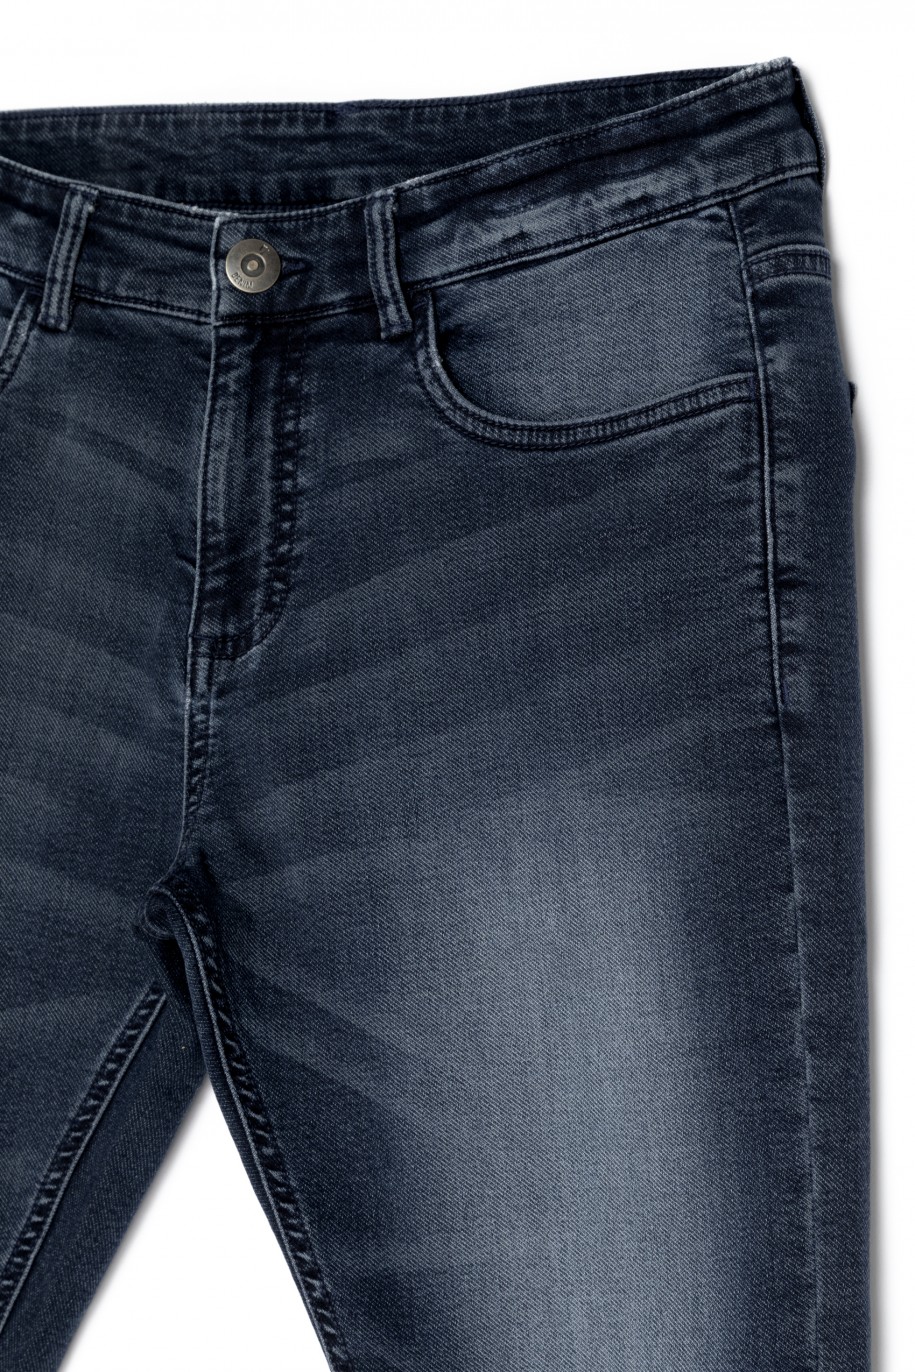 Granatowe spodnie jeansowe dla chłopaka - 30301